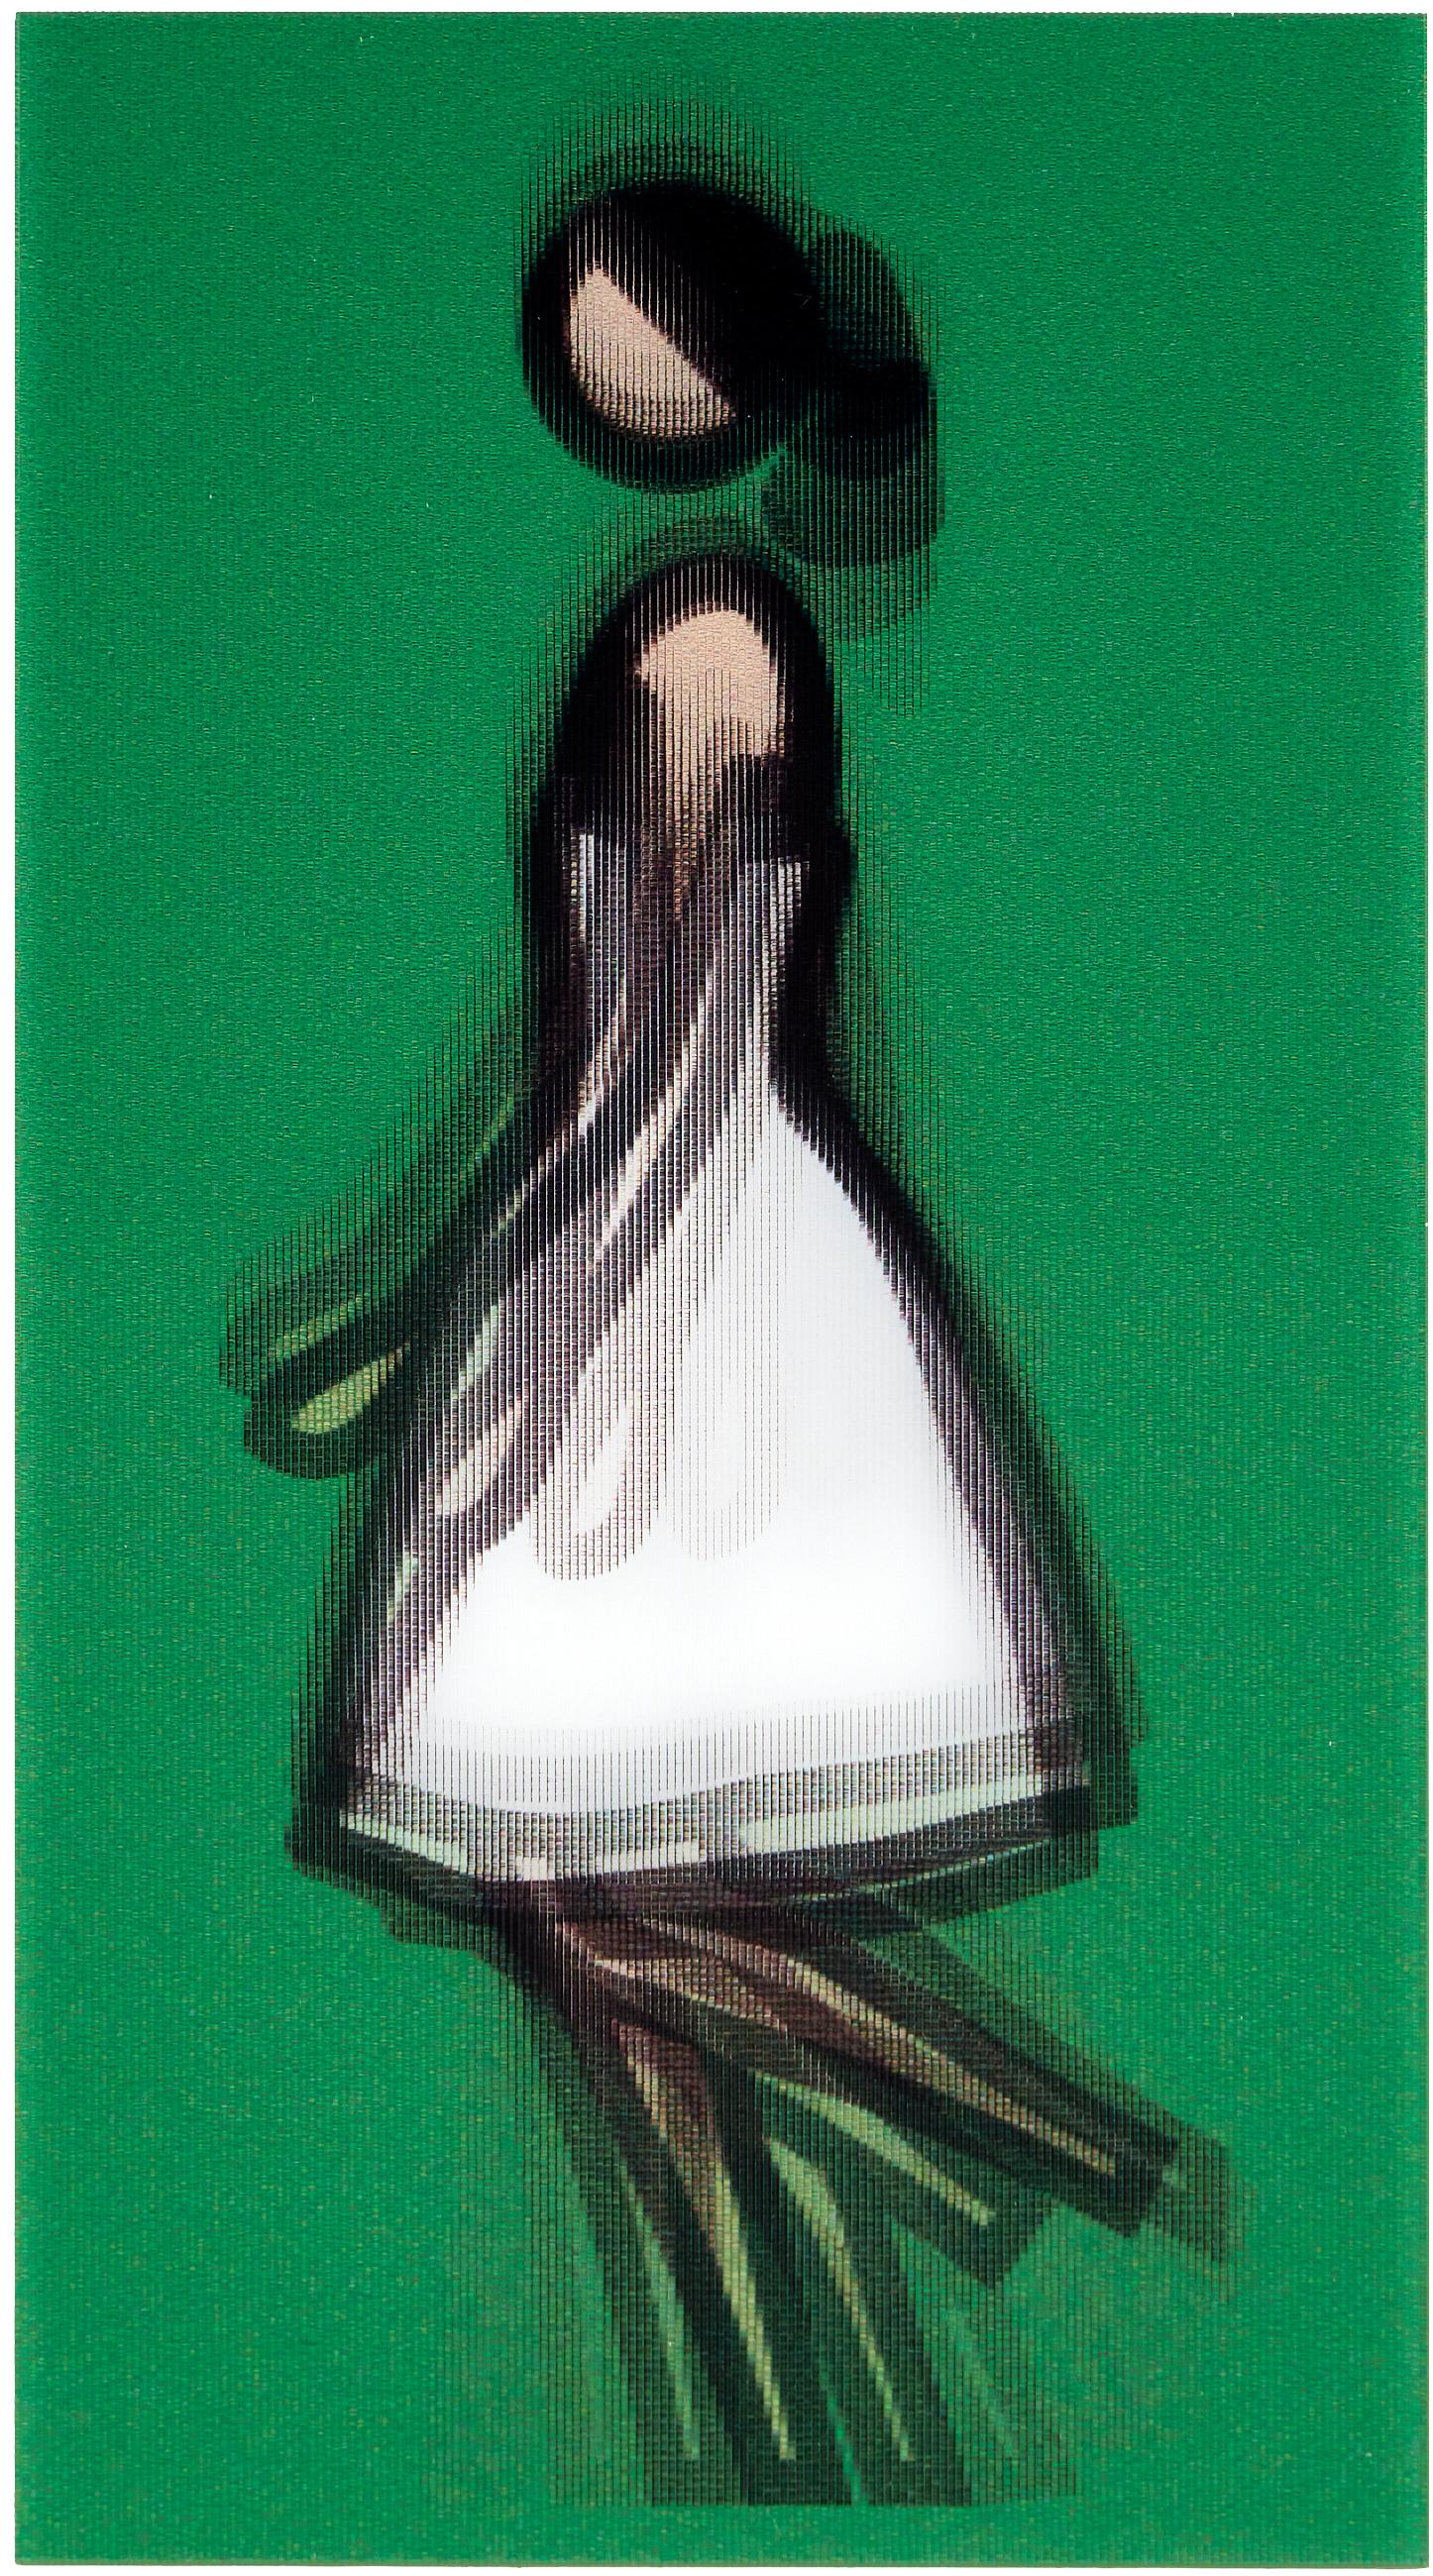 Amelia -- Lenticular, Woman Figure, Moving, Pop Art by Julian Opie